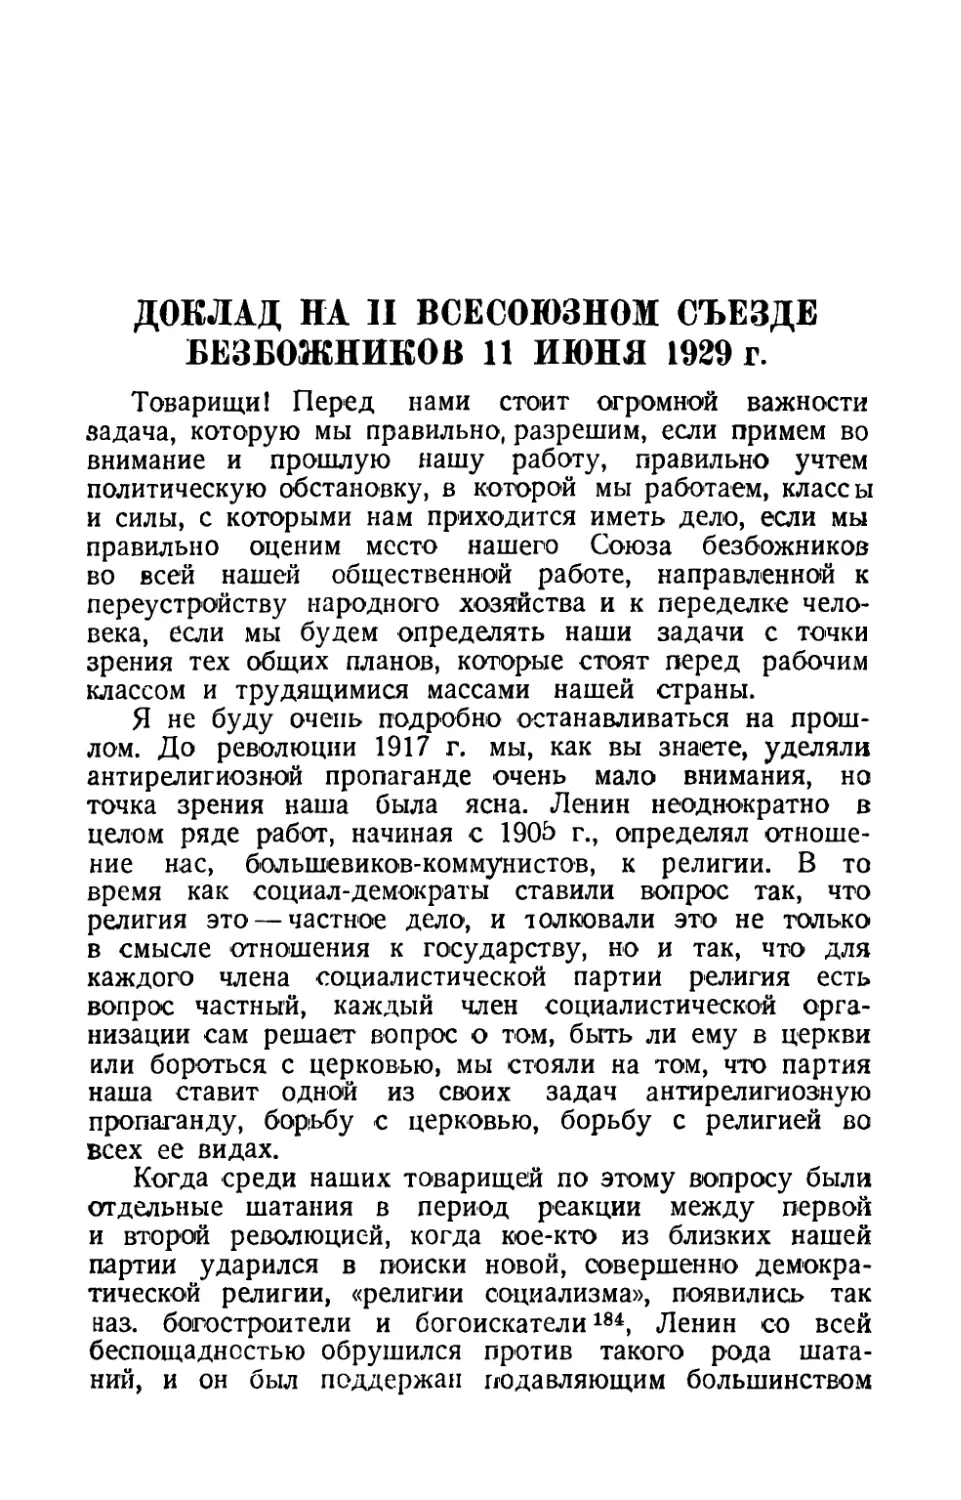 Доклад на II всесоюзном съезде безбожников 11 июня 1929 г.